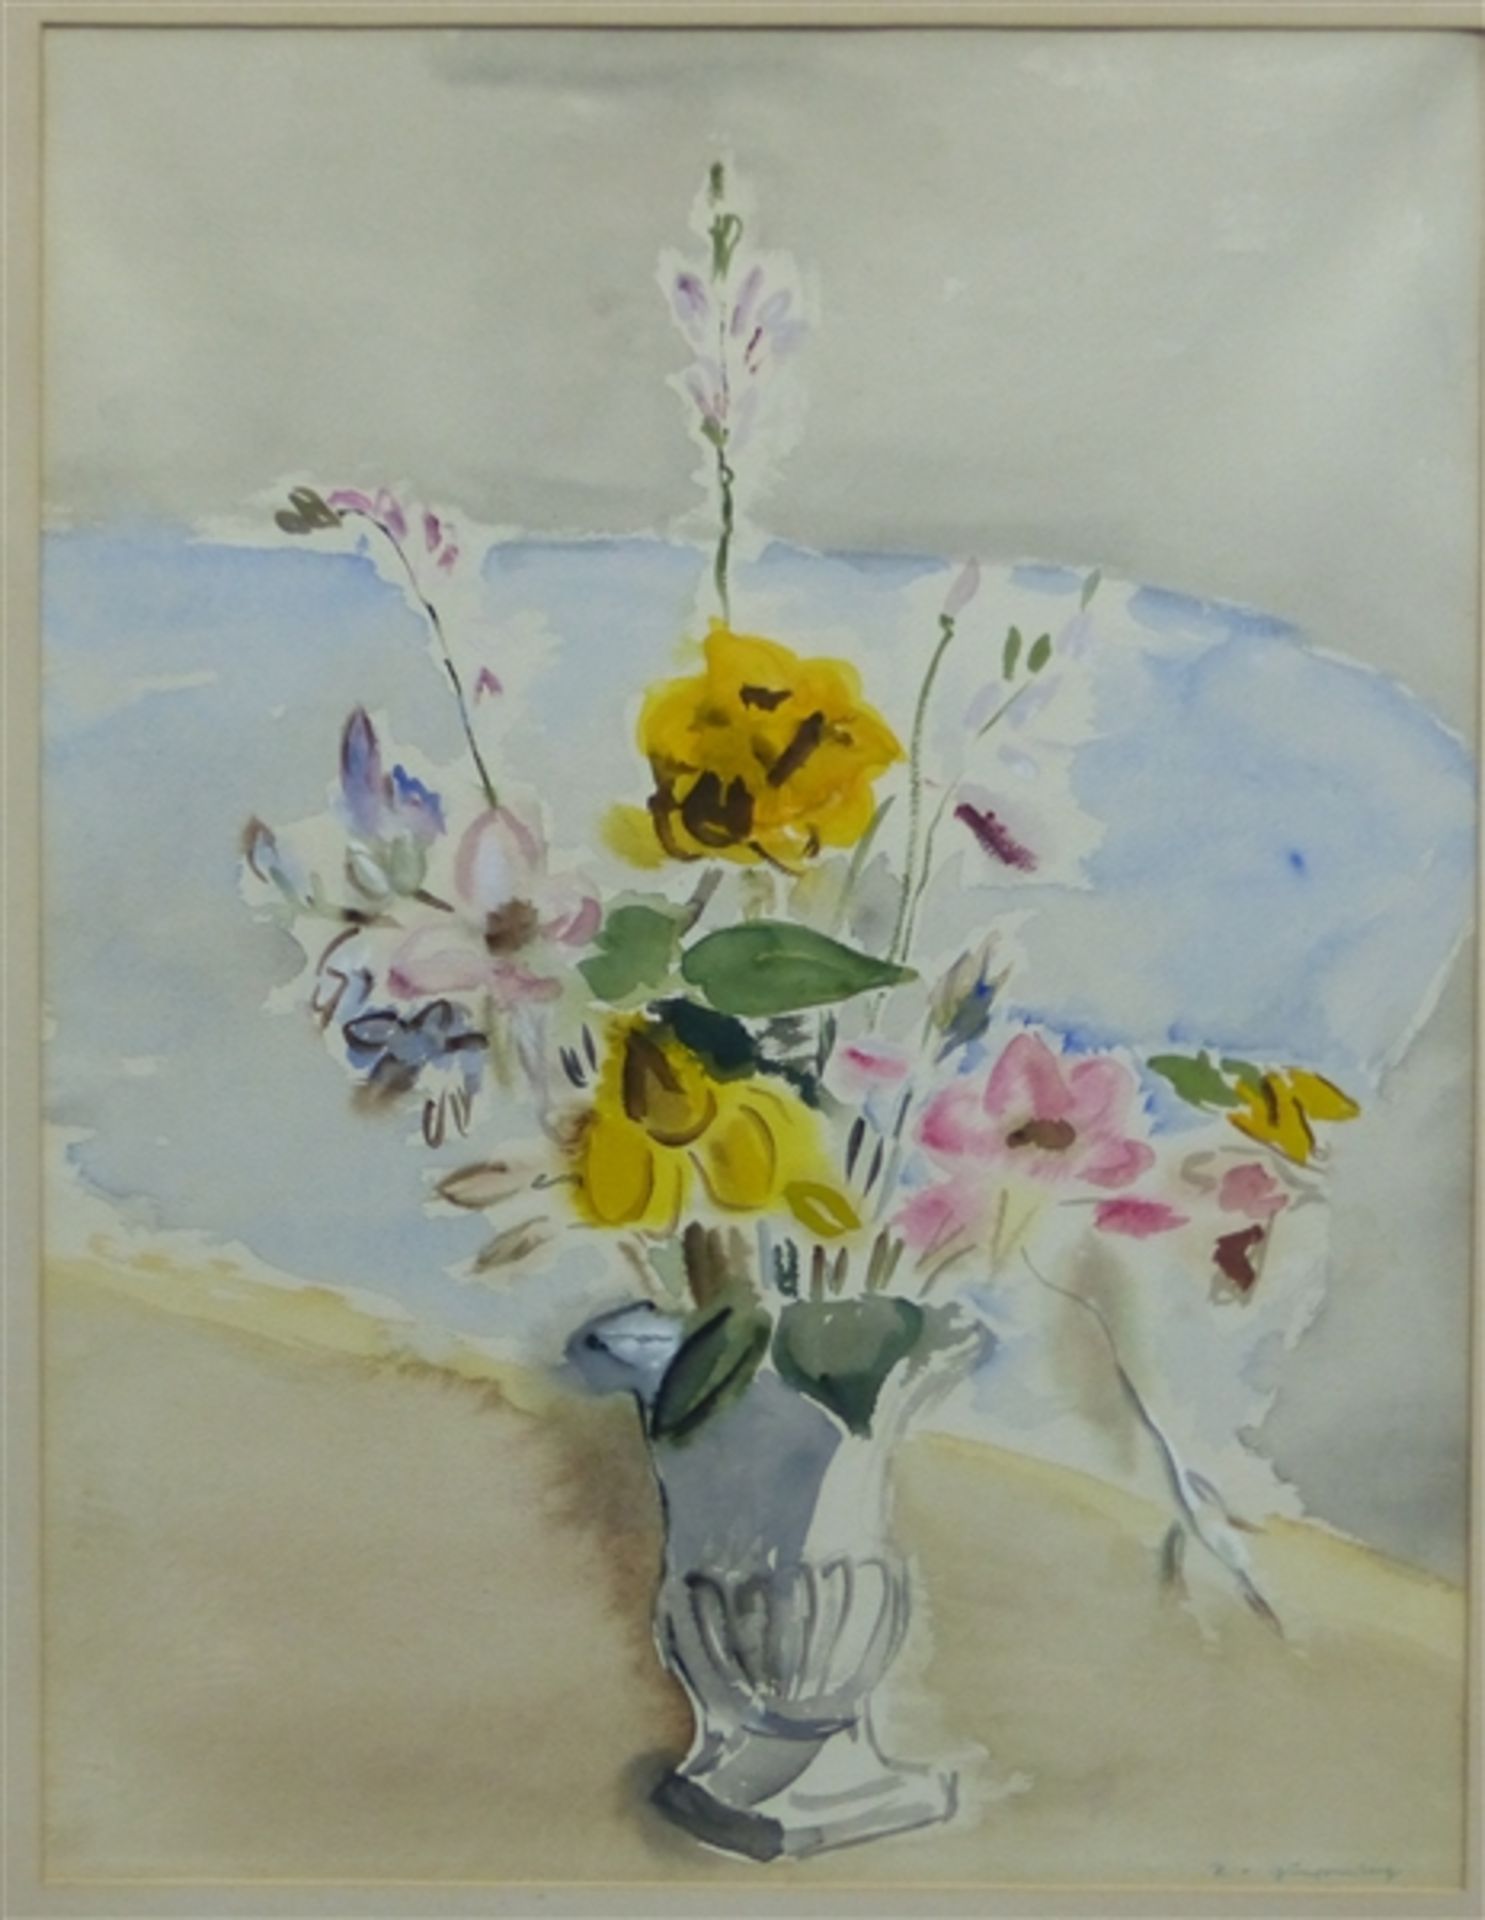 Gumppenberg, Herta von 1897 - 1954, Aquarell auf Papier, Blumenstrauß in der Vase, rechts unten